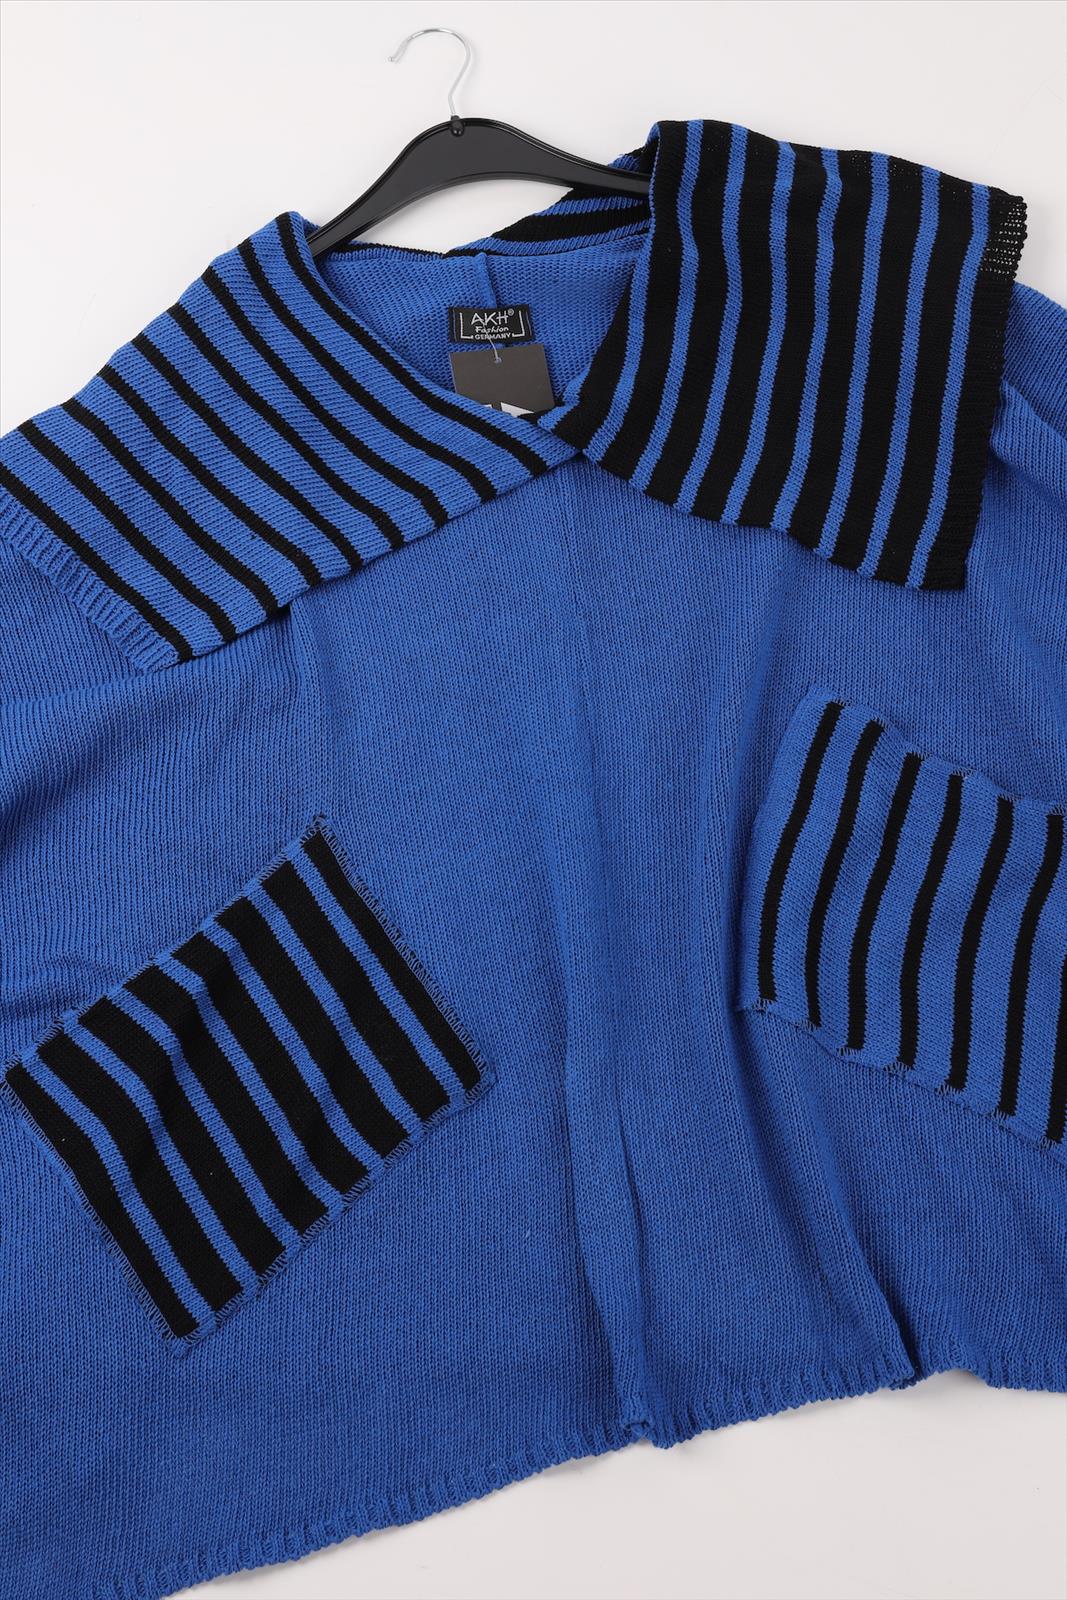 Übergangs Pullover in kastiger Form aus er Qualität, Royalblau-Schwarz Lagenlook Oversize Mode B2B Großhandel